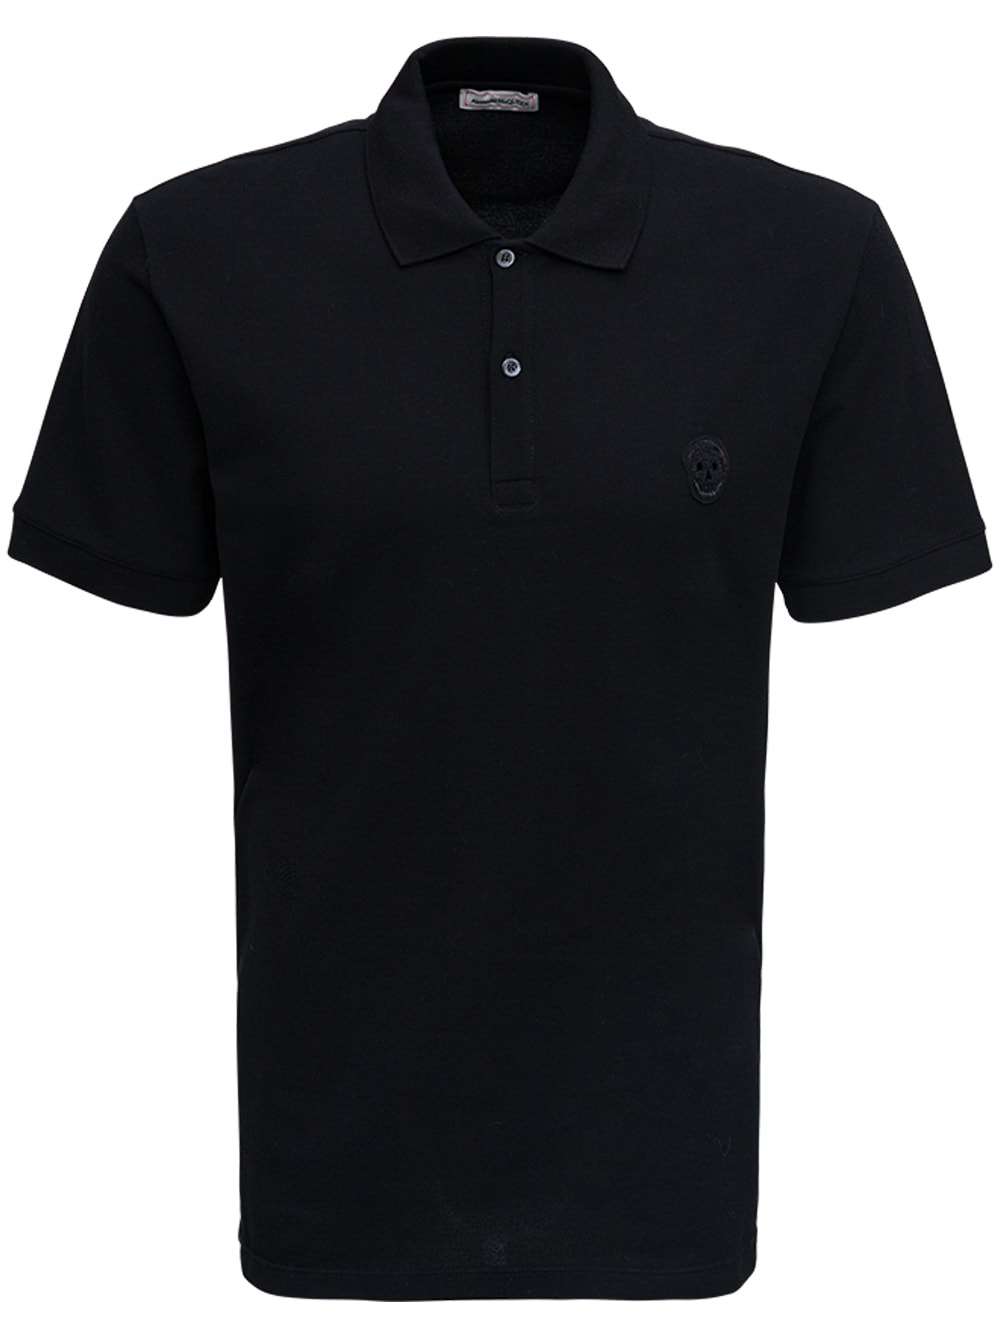 Alexander McQueen Black Cotton Polo Shirt With Logo